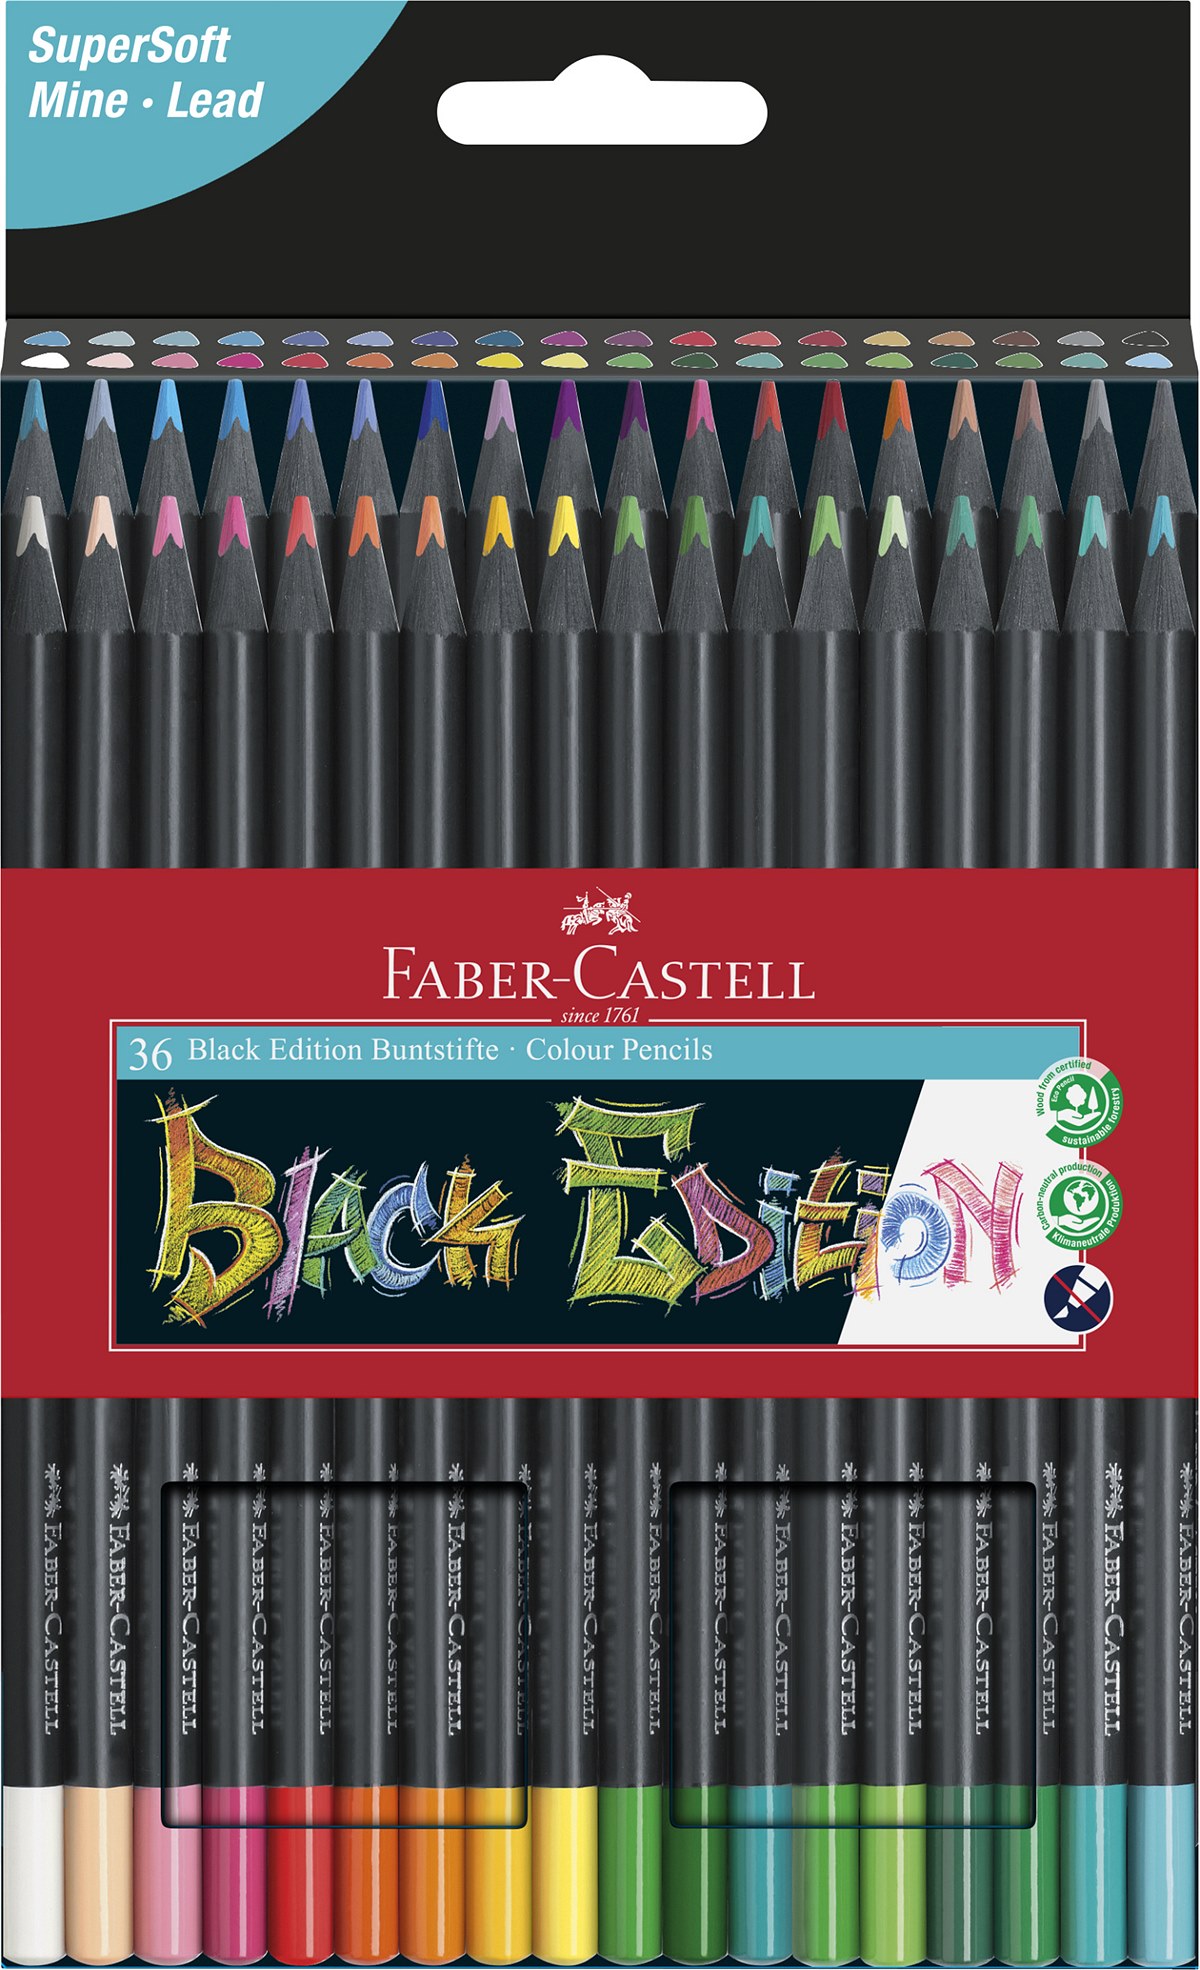 Faber-Castell_BlackEdition_Buntstifte_36er_EUR 24,00 (1)